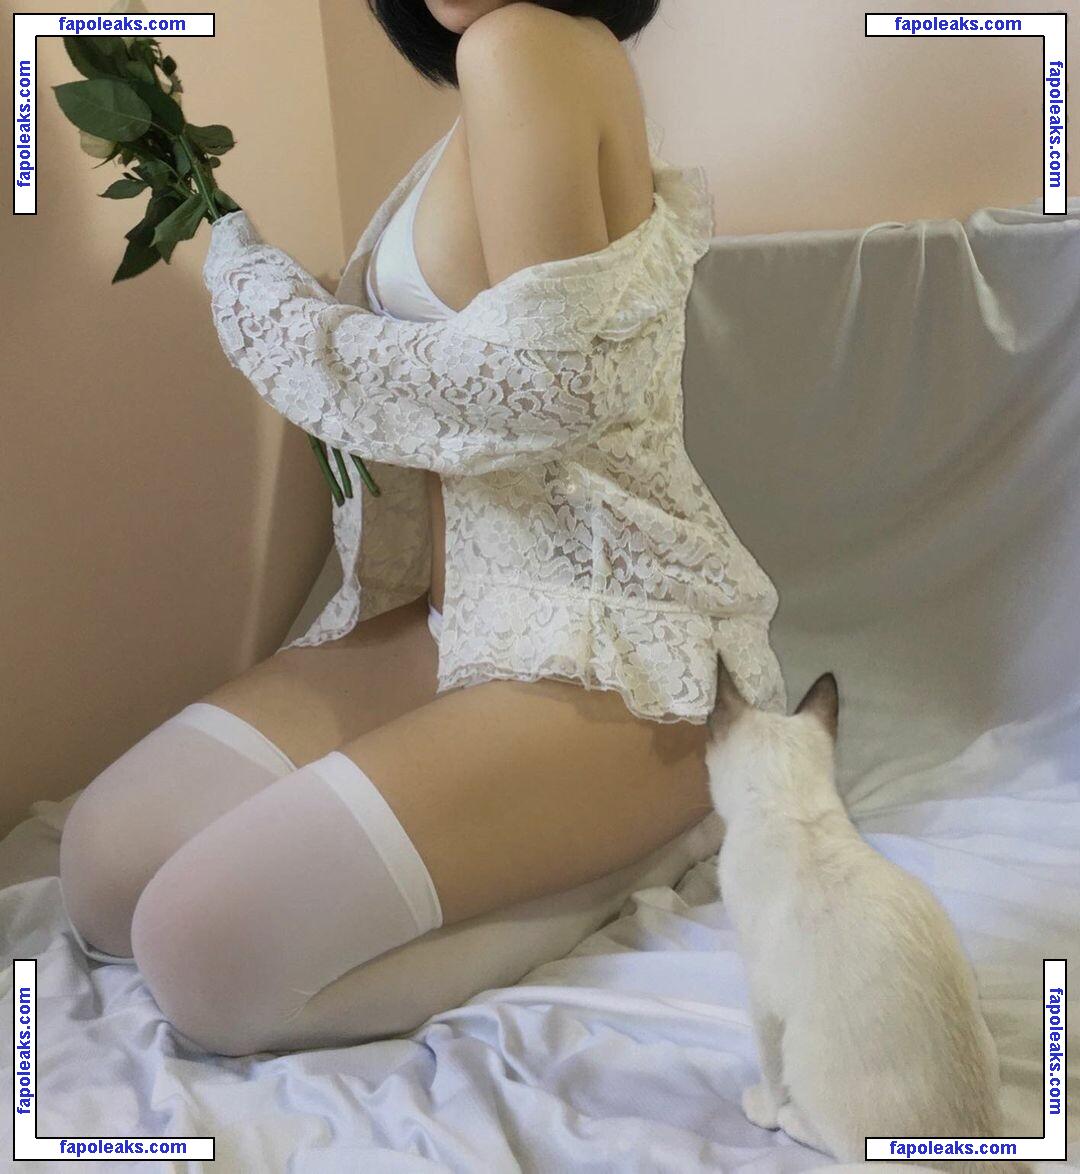 kewlercat / Kewlercats / kewlercatsfoto / nhớ nude photo #0021 from OnlyFans